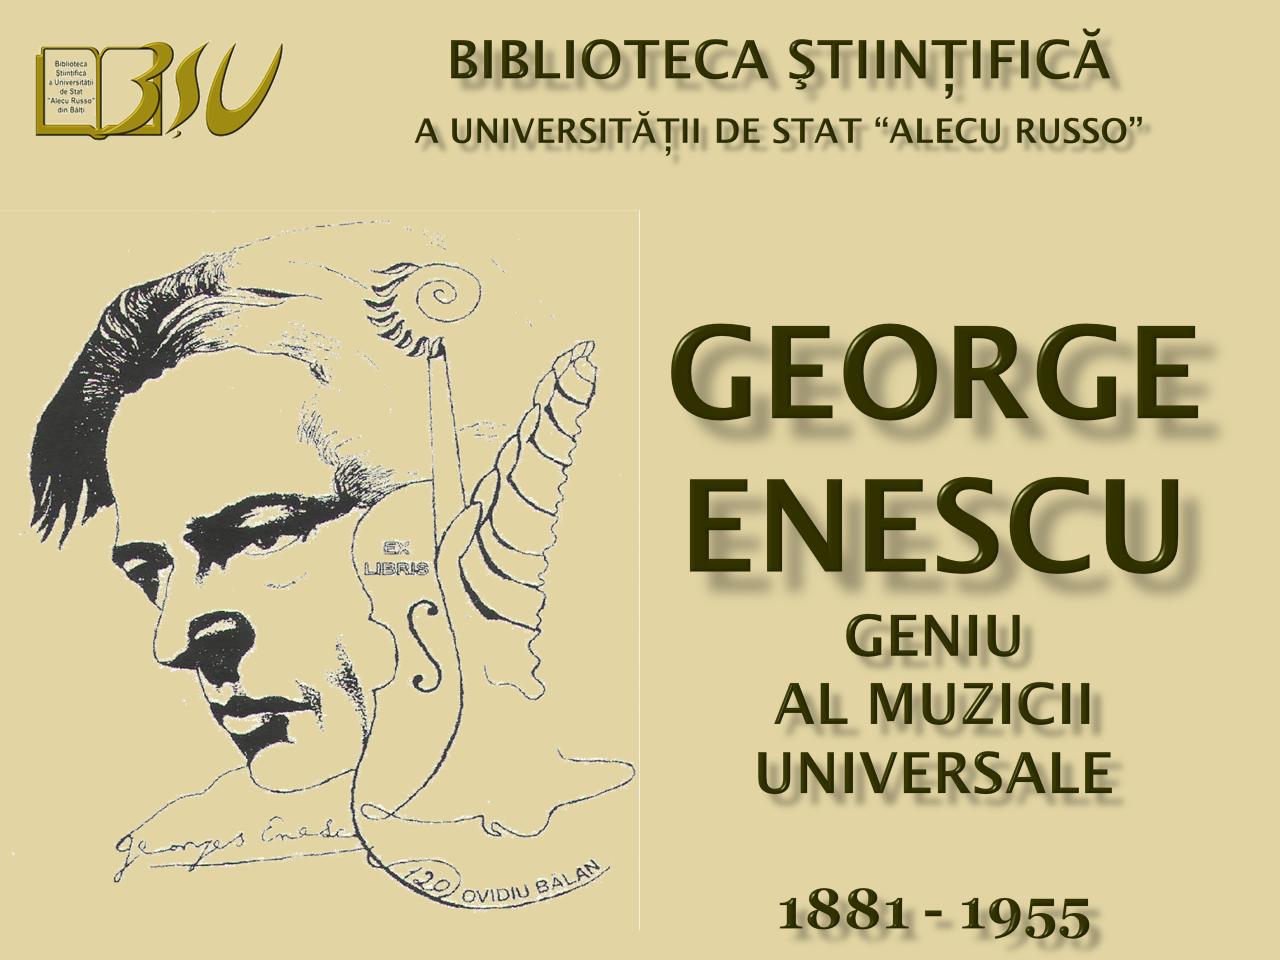 Foto expoziţie on-line: George Enescu - geniu al muzicii universale (1881 - 1955)